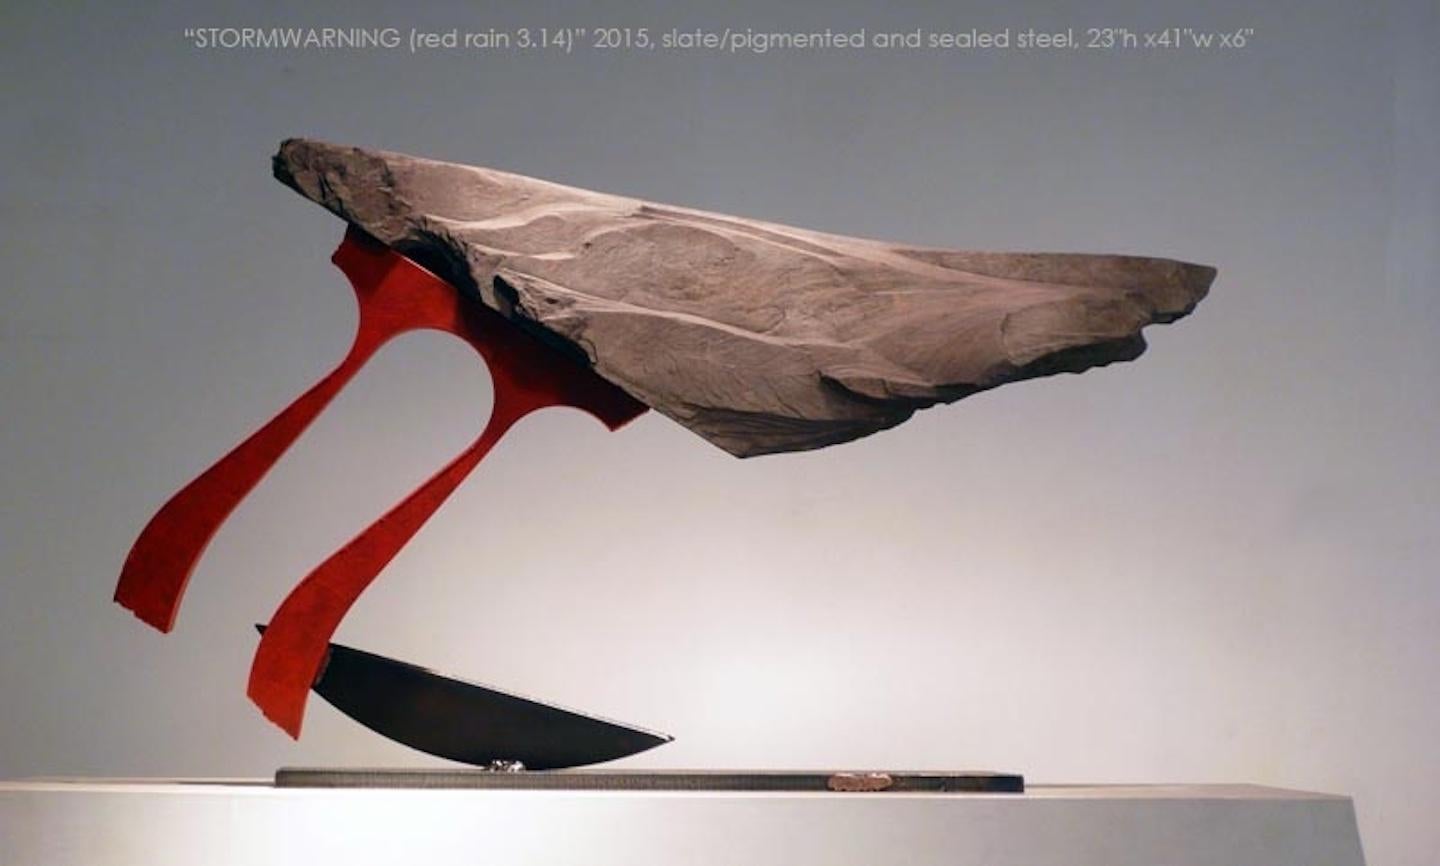 Stormwarning V (Red Rain 3.14) - Sculpture by John Van Alstine